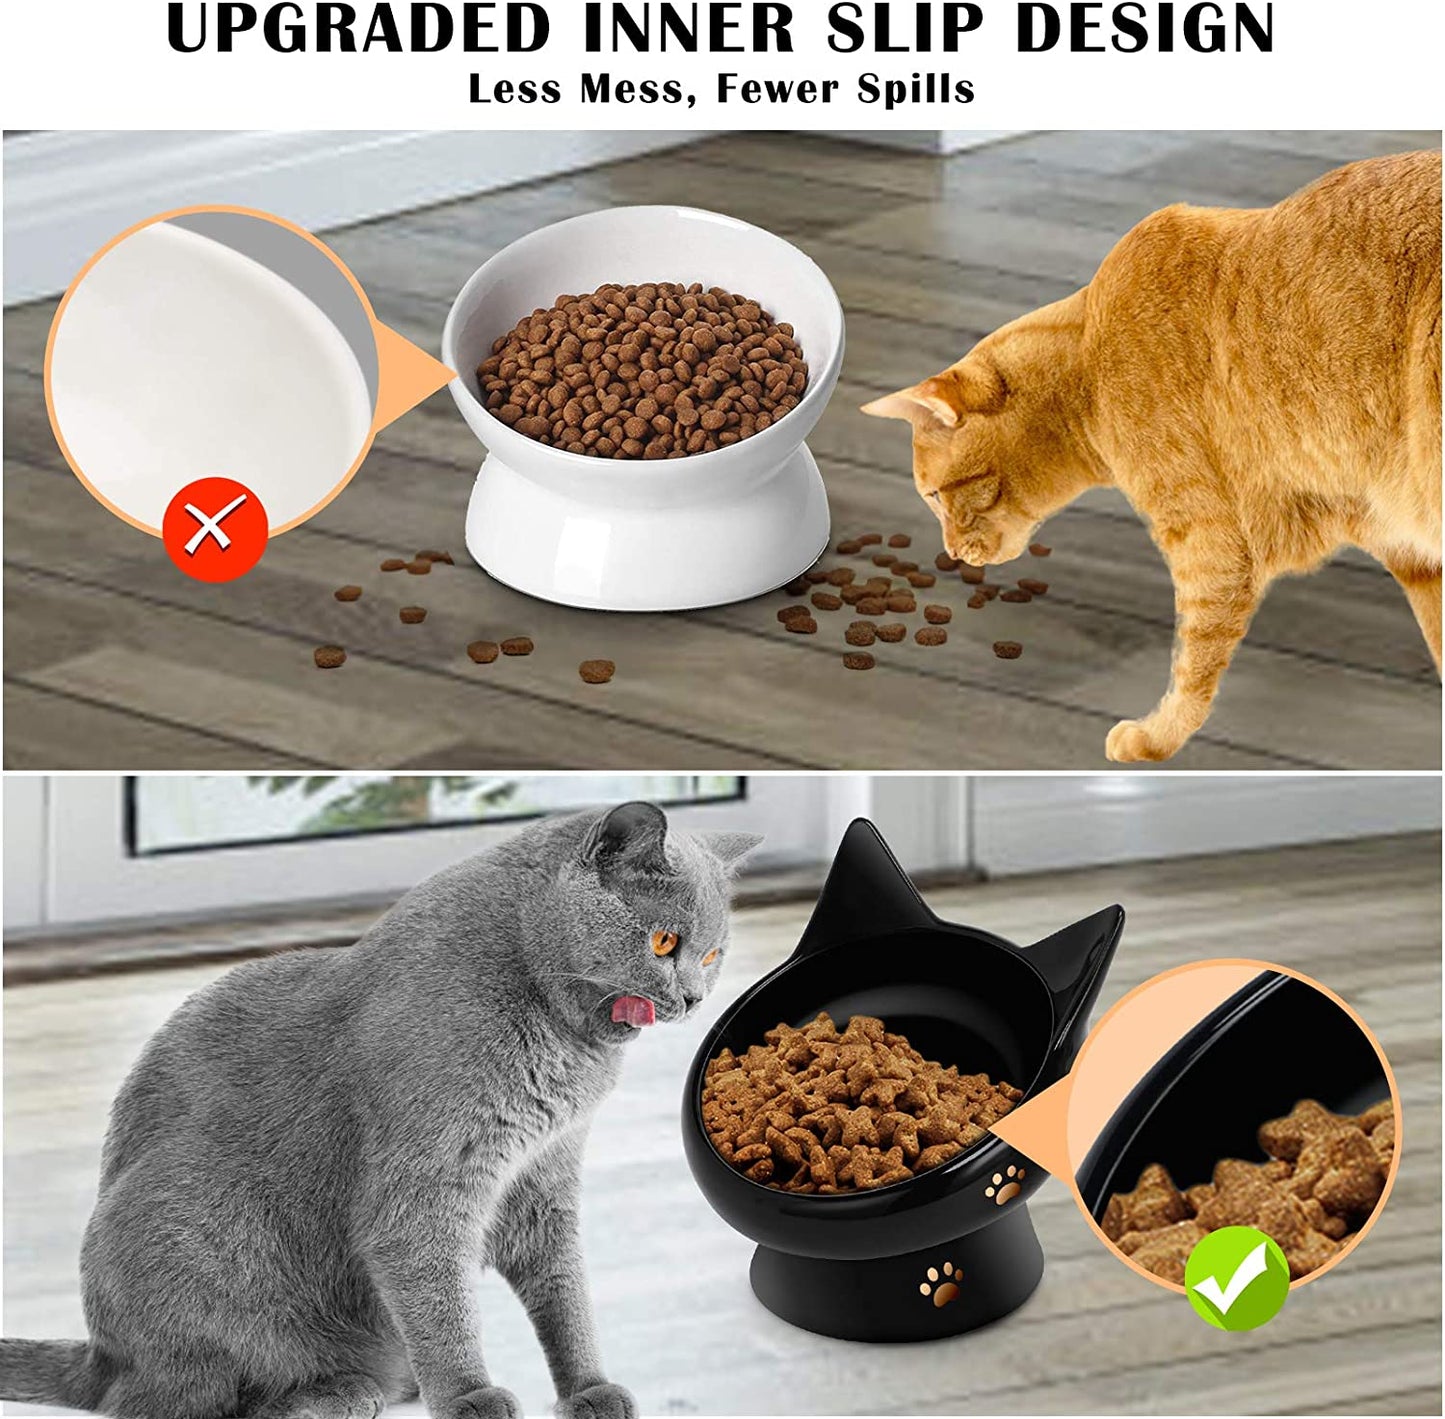 Cat Bowl,Raised Cat Food Bowls Anti Vomiting,Tilted Elevated Cat Bowl,Ceramic